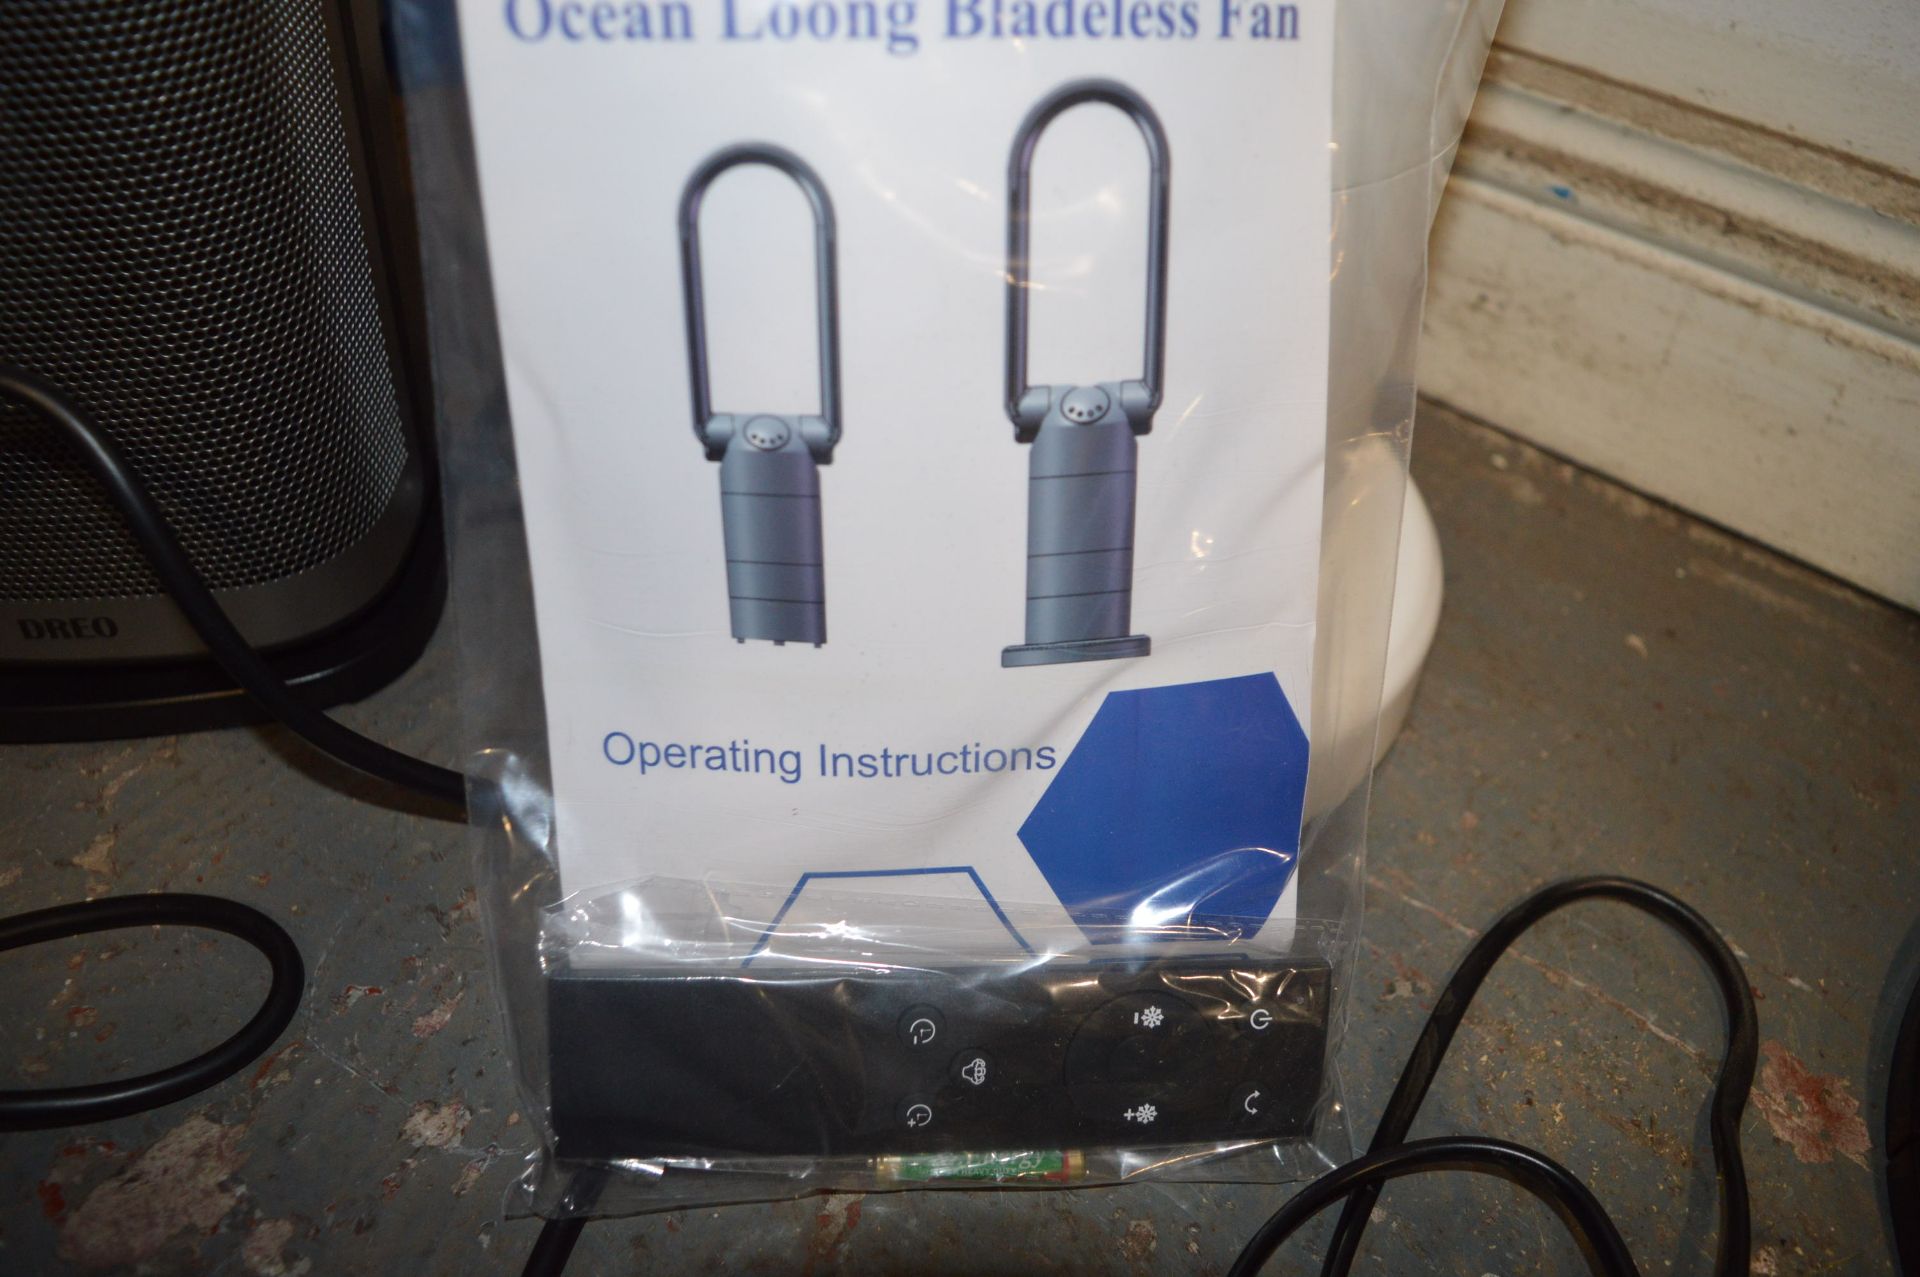 *Ocean Loong Bladeless Fan - Image 3 of 3